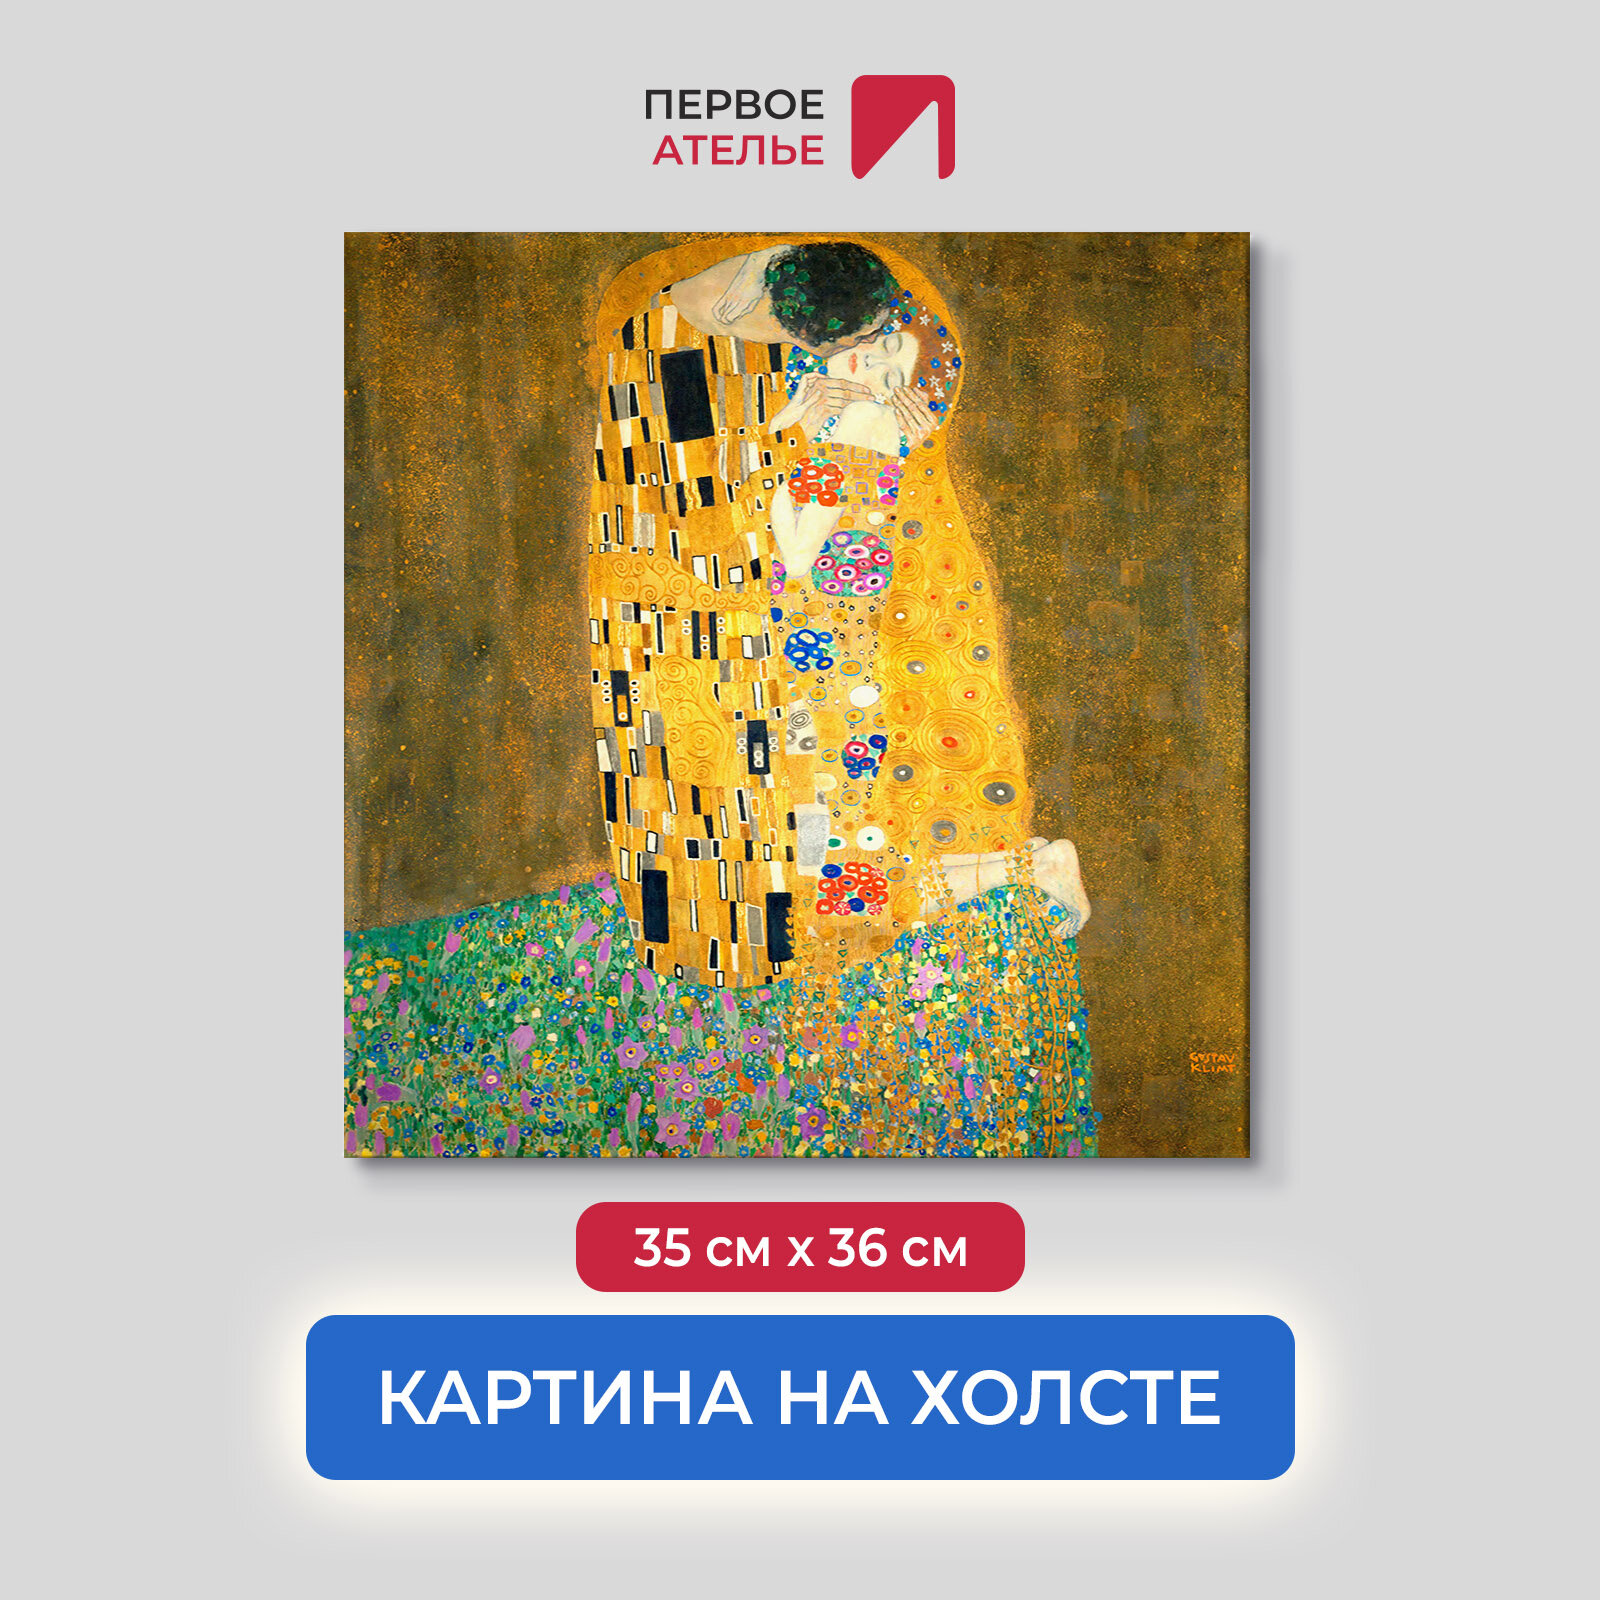 Постер для интерьера на стену первое ателье - репродукция картины Густава Климта "Поцелуй" 35х36 см (ШхВ), на холсте